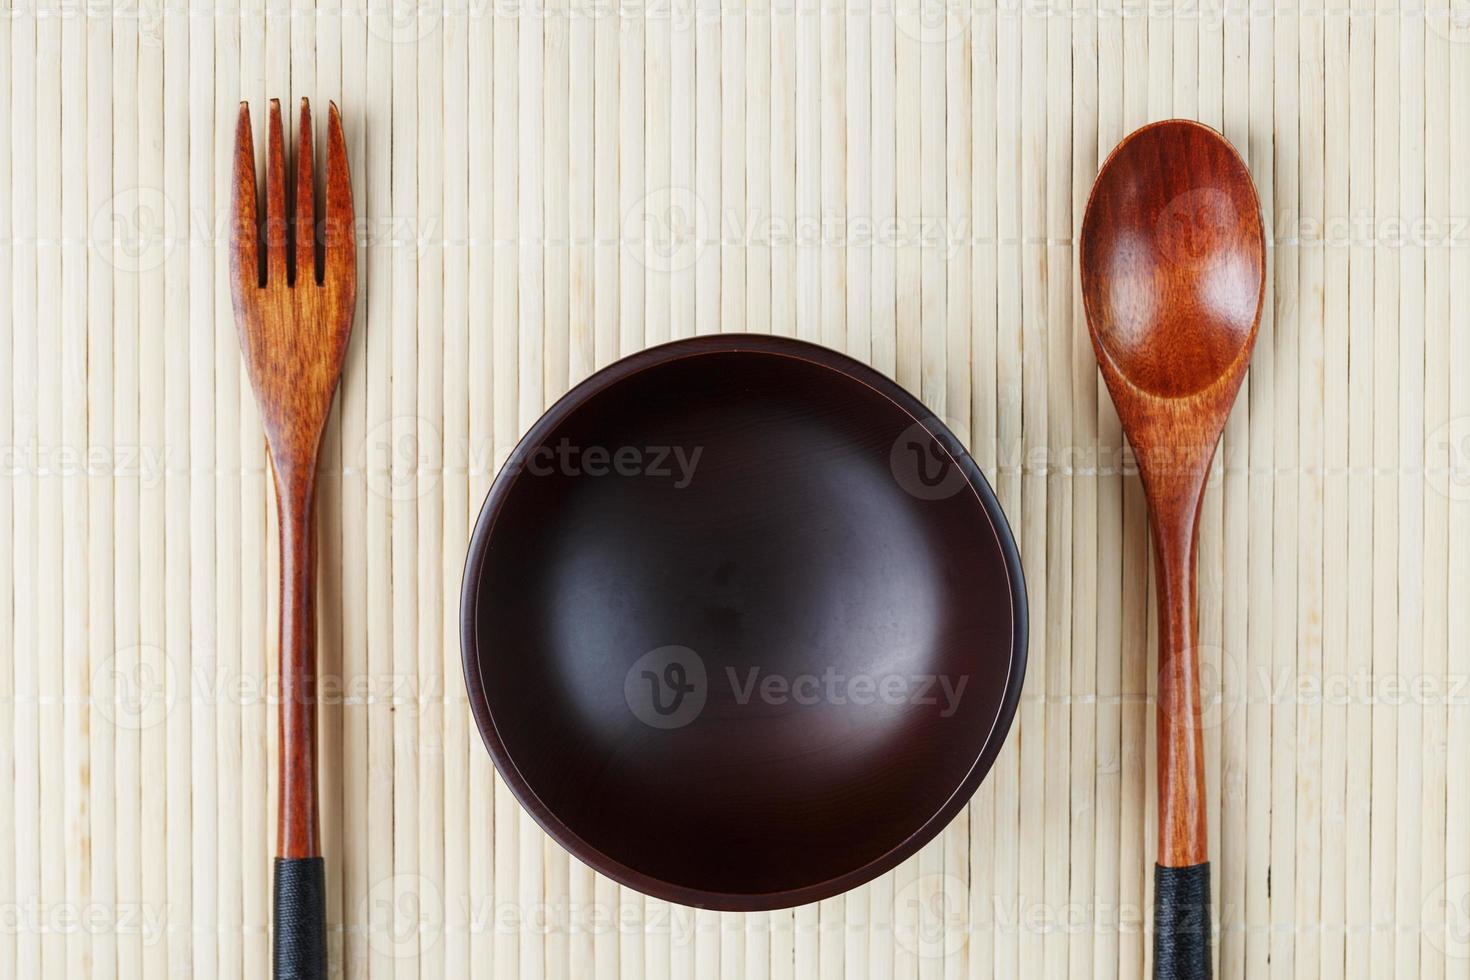 tömma mörk trä- kopp, sked och gaffel tillverkad av naturlig trä på en ljus bambu stöd foto